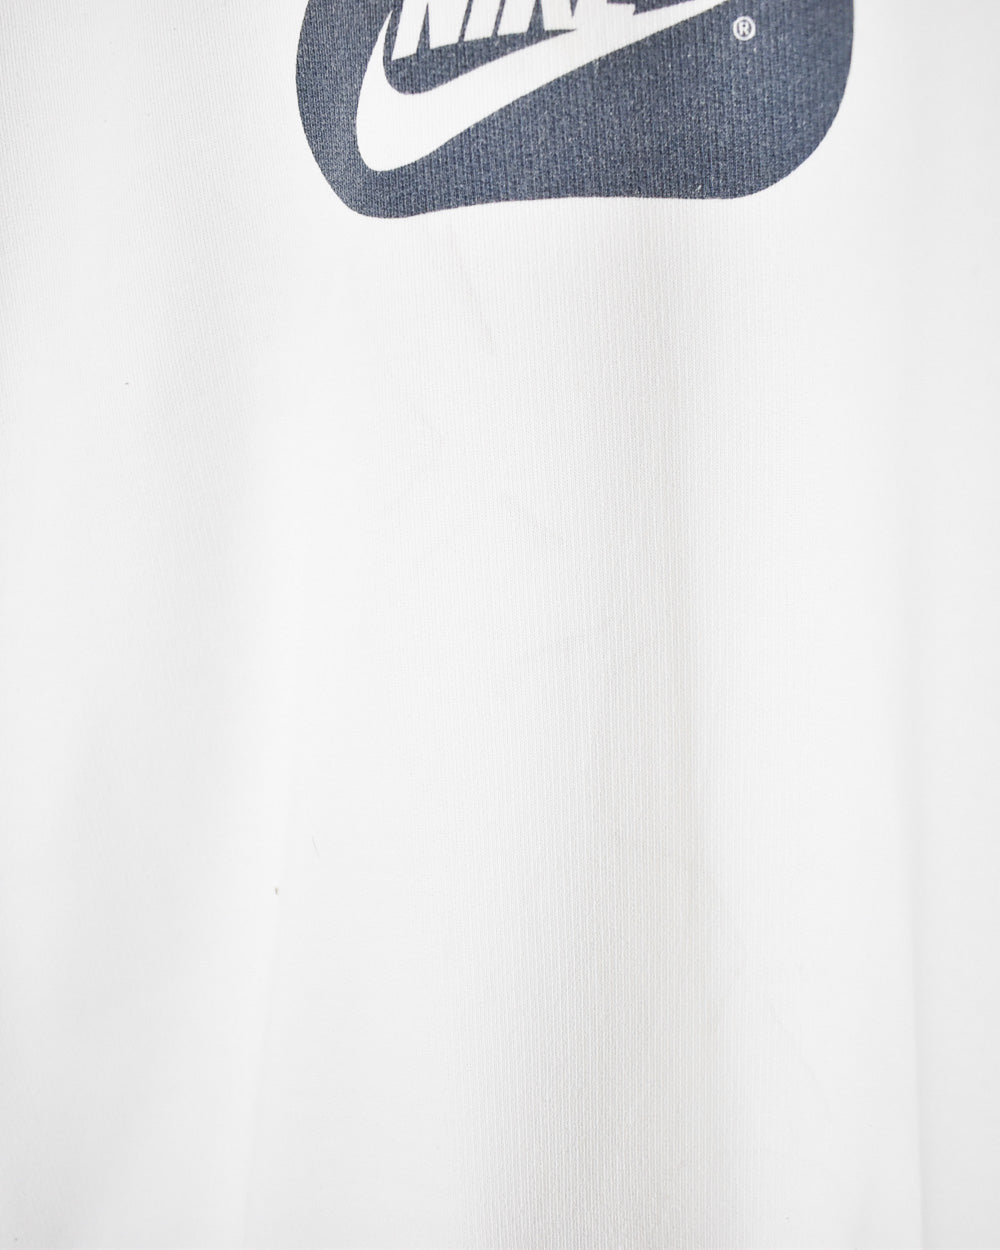 White Nike Sweatshirt - Medium